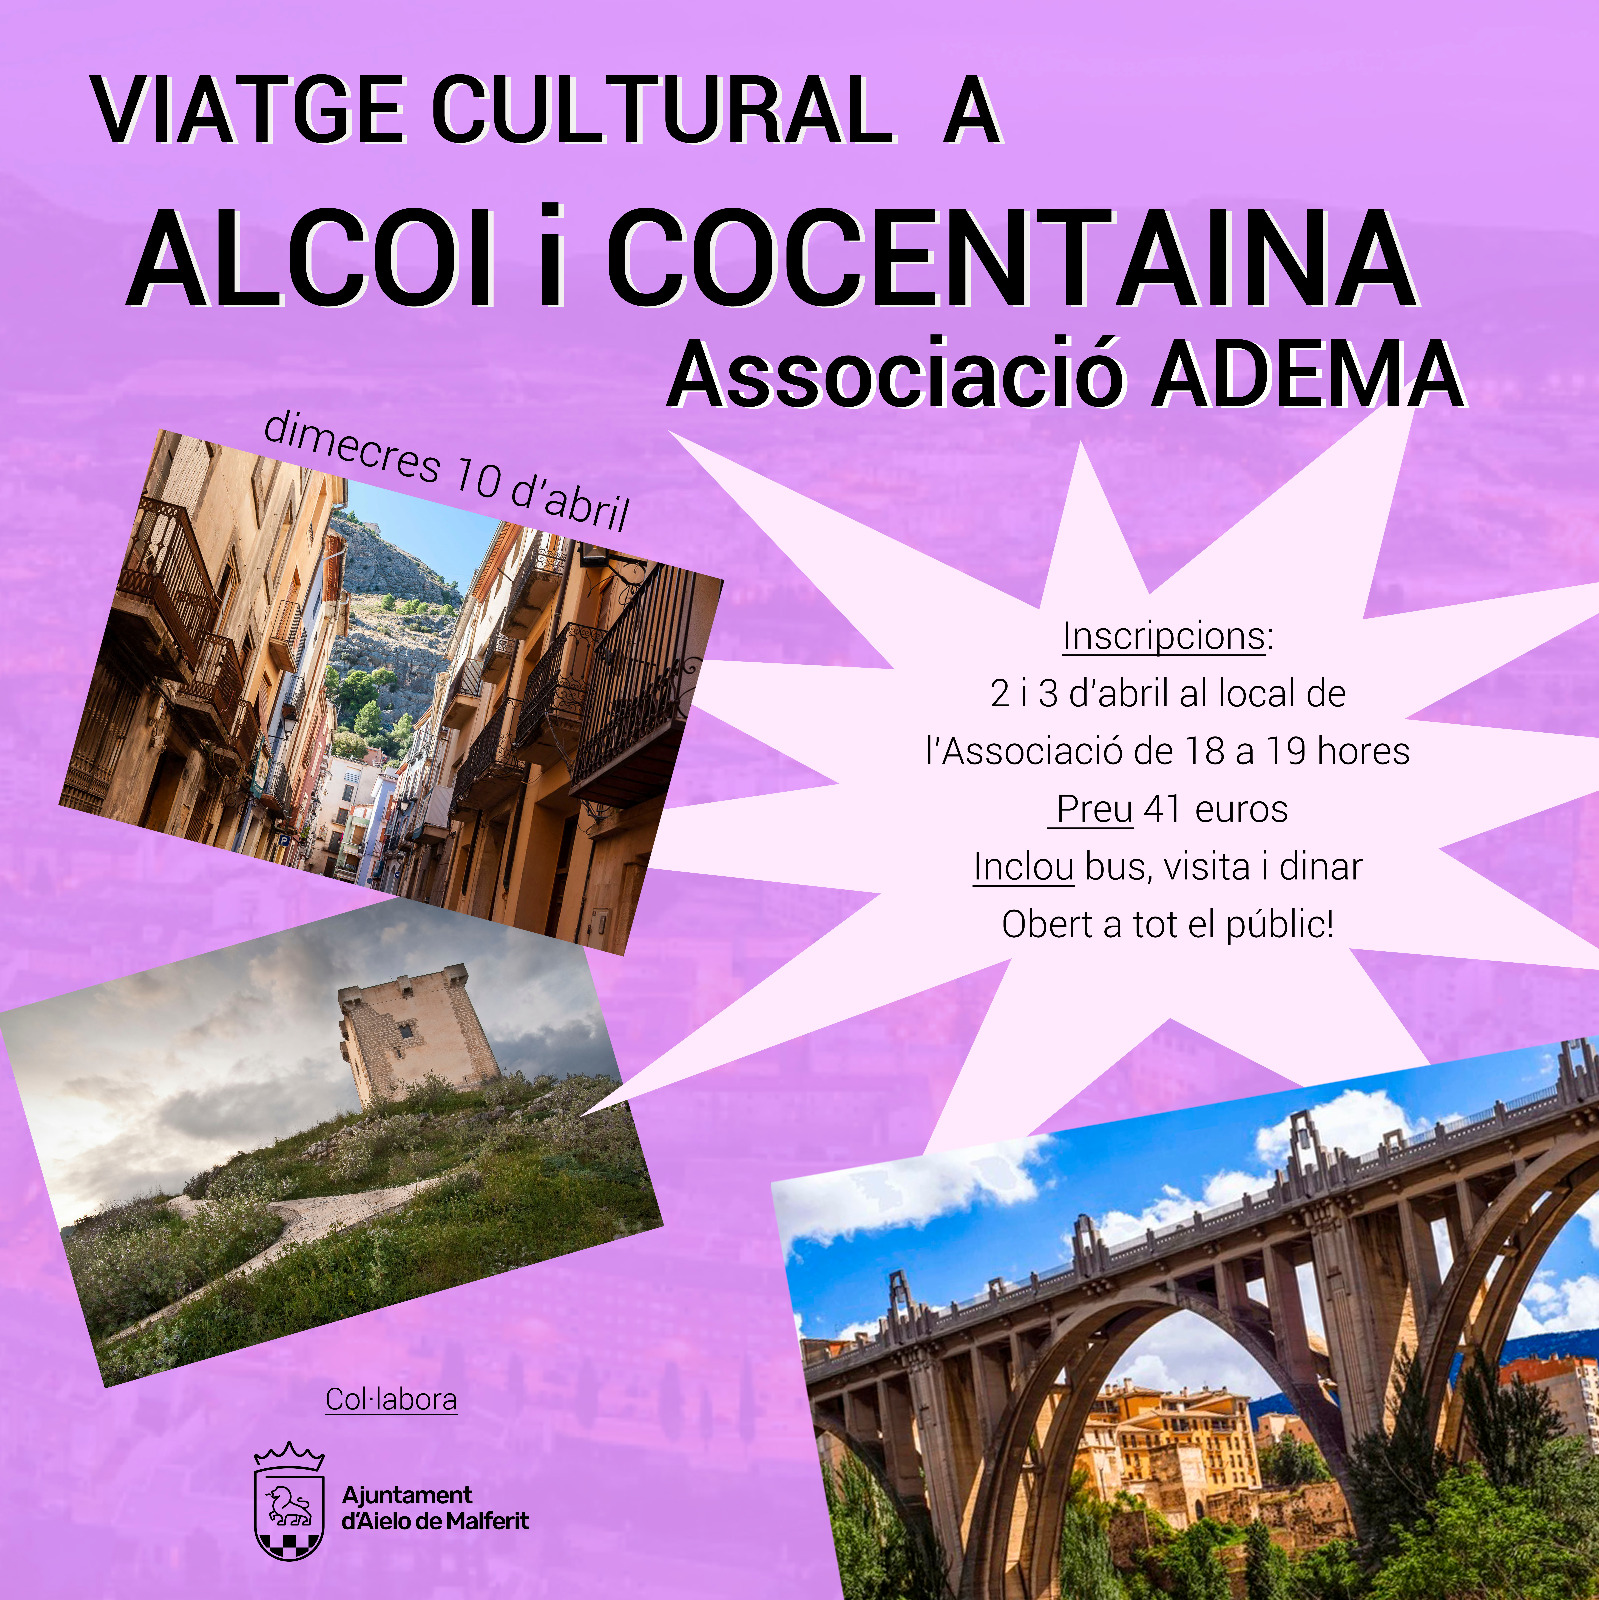 Viatge a Alcoi i Cocentaina | Associació ADEMA